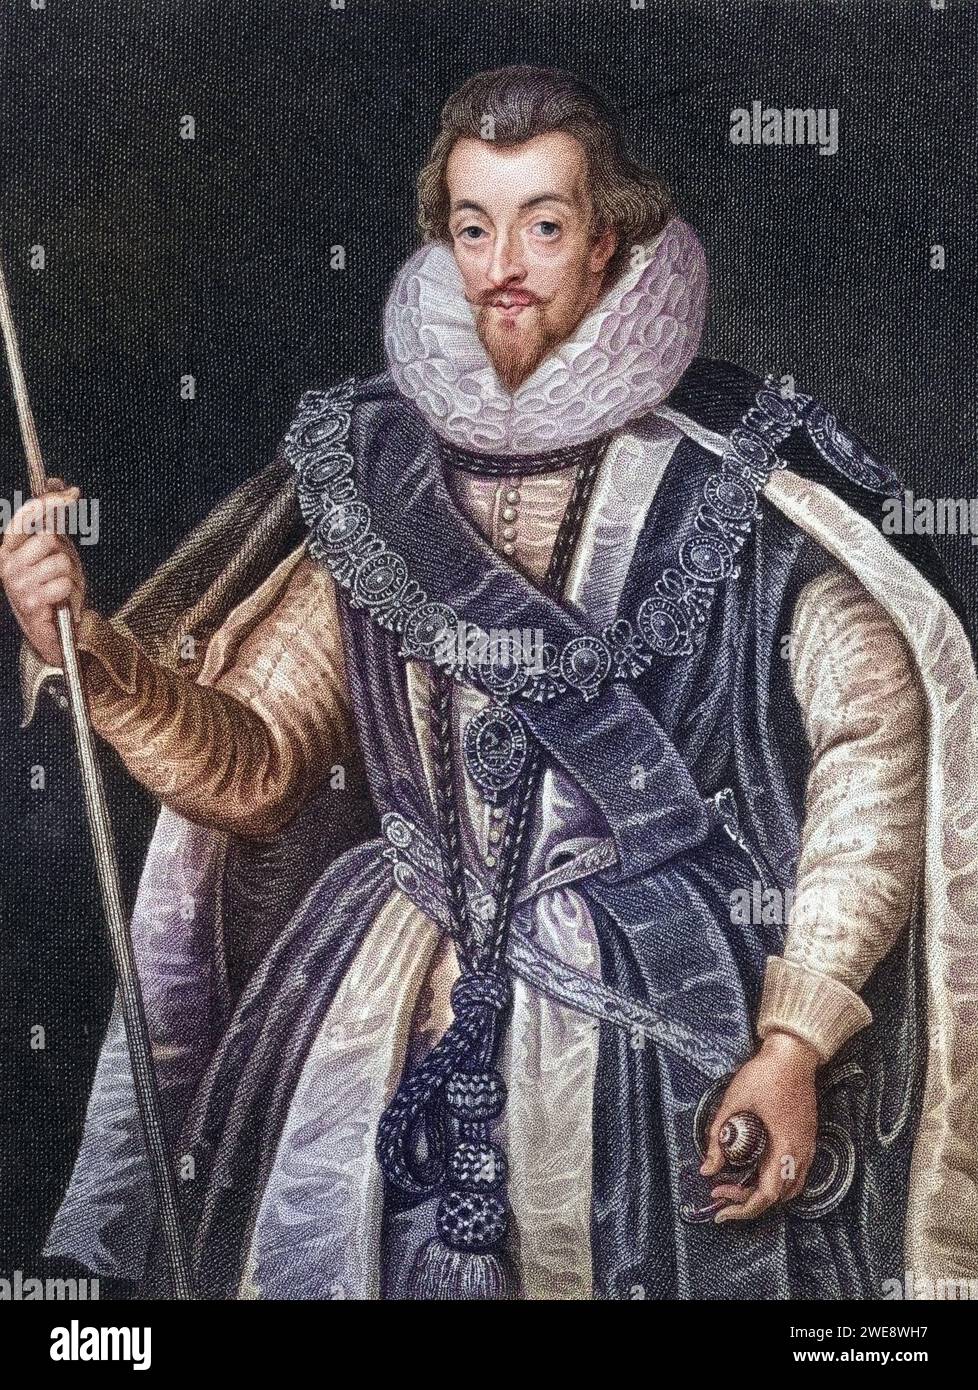 Robert Cecil 1. Graf von Salisbury, 1563-1612. Englischer Staatsmann. Aus dem Buch Lodges British Portraits, erschienen 1823., Historisch, digital restaurierte Reproduktion von einer Vorlage aus dem 19. Jahrhundert, Record date not stated Stock Photo